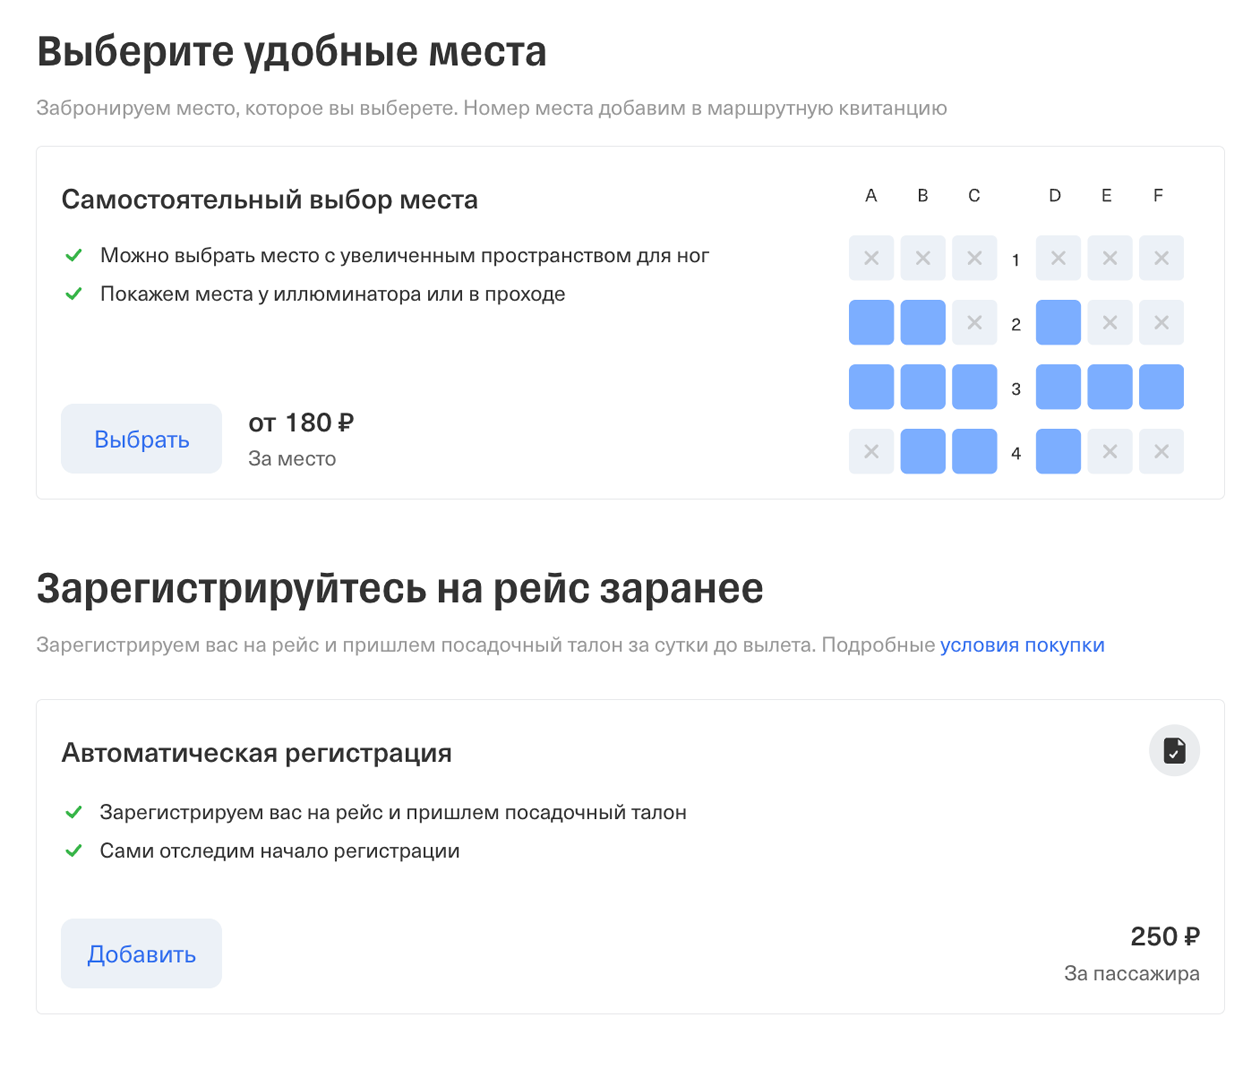 Тинькофф покажет места у иллюминаторов или рядом с проходом. Источник: tinkoff.ru